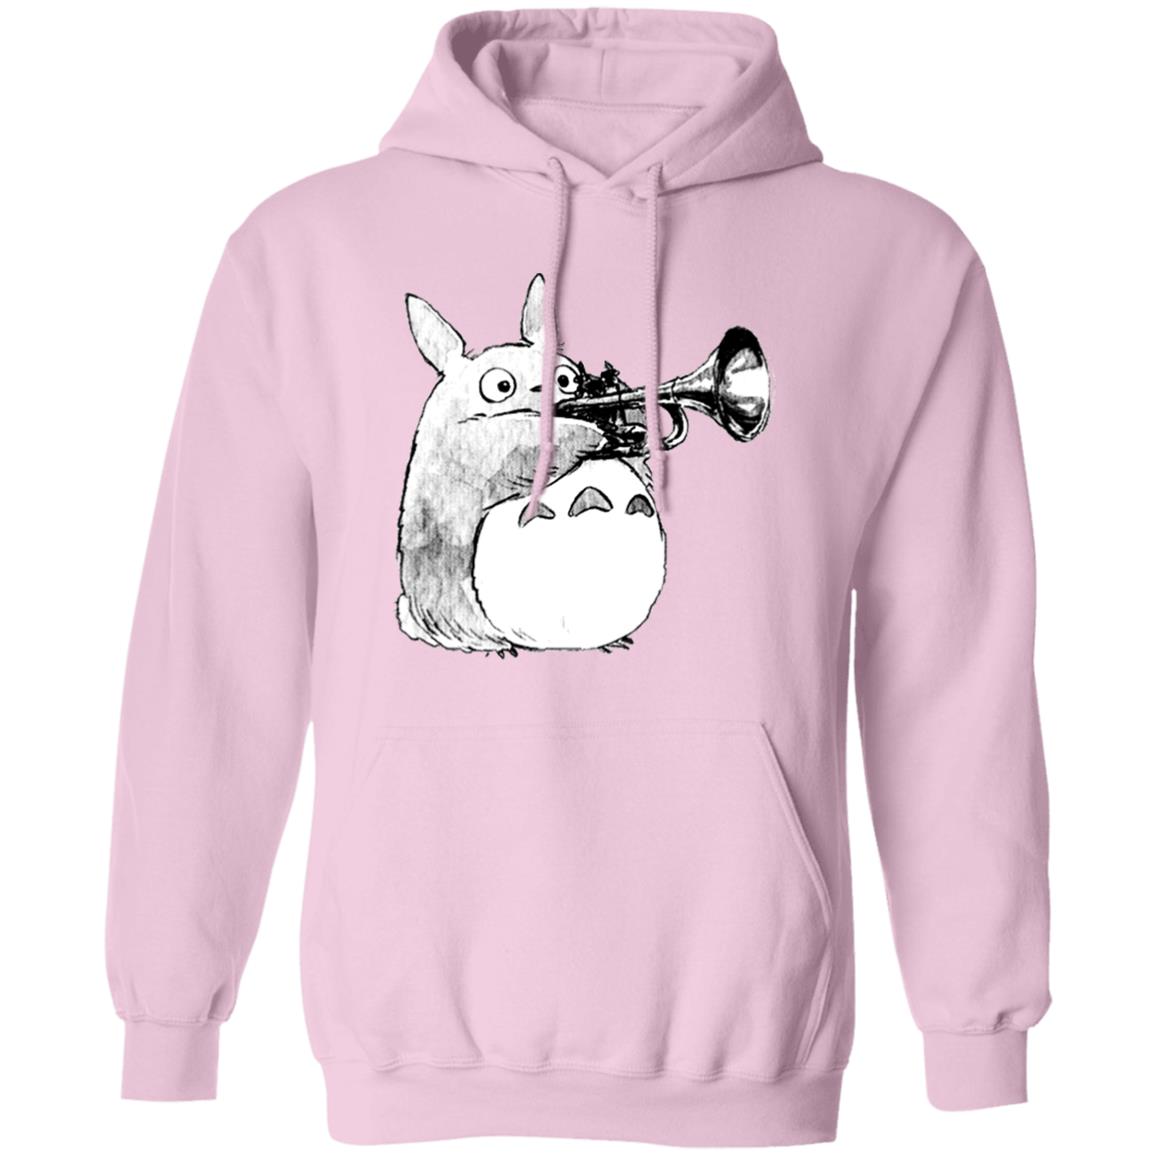 Totoro and the trumpet Hoodie Ghibli Store ghibli.store